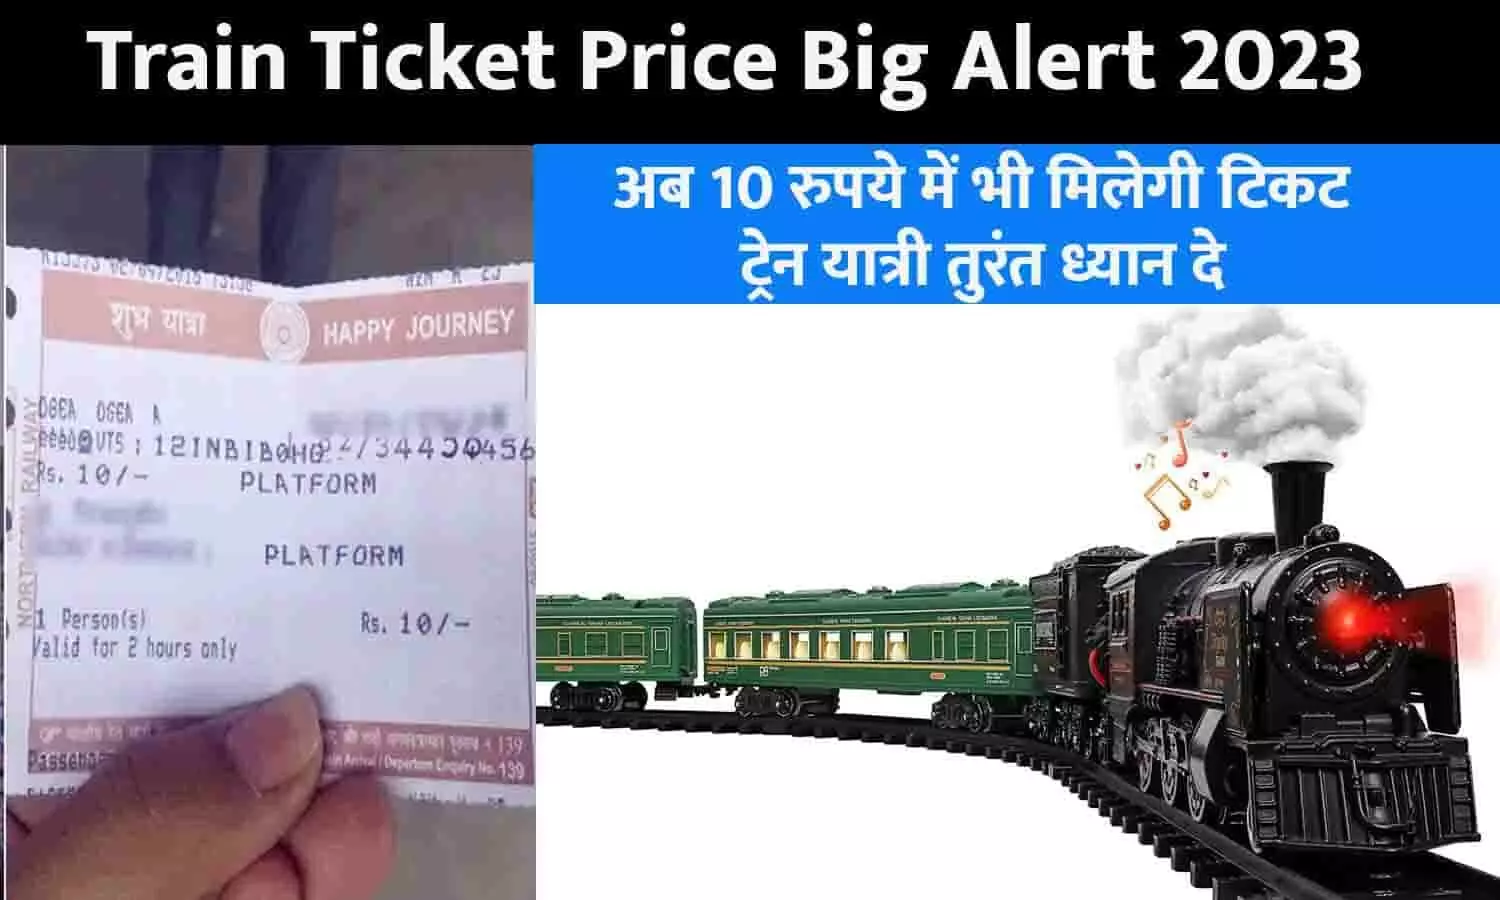 Train Ticket Price Big Alert 2023: गुड न्यूज़! अब 10 रुपये में भी मिलेगी टिकट, ट्रेन यात्री तुरंत ध्यान दे